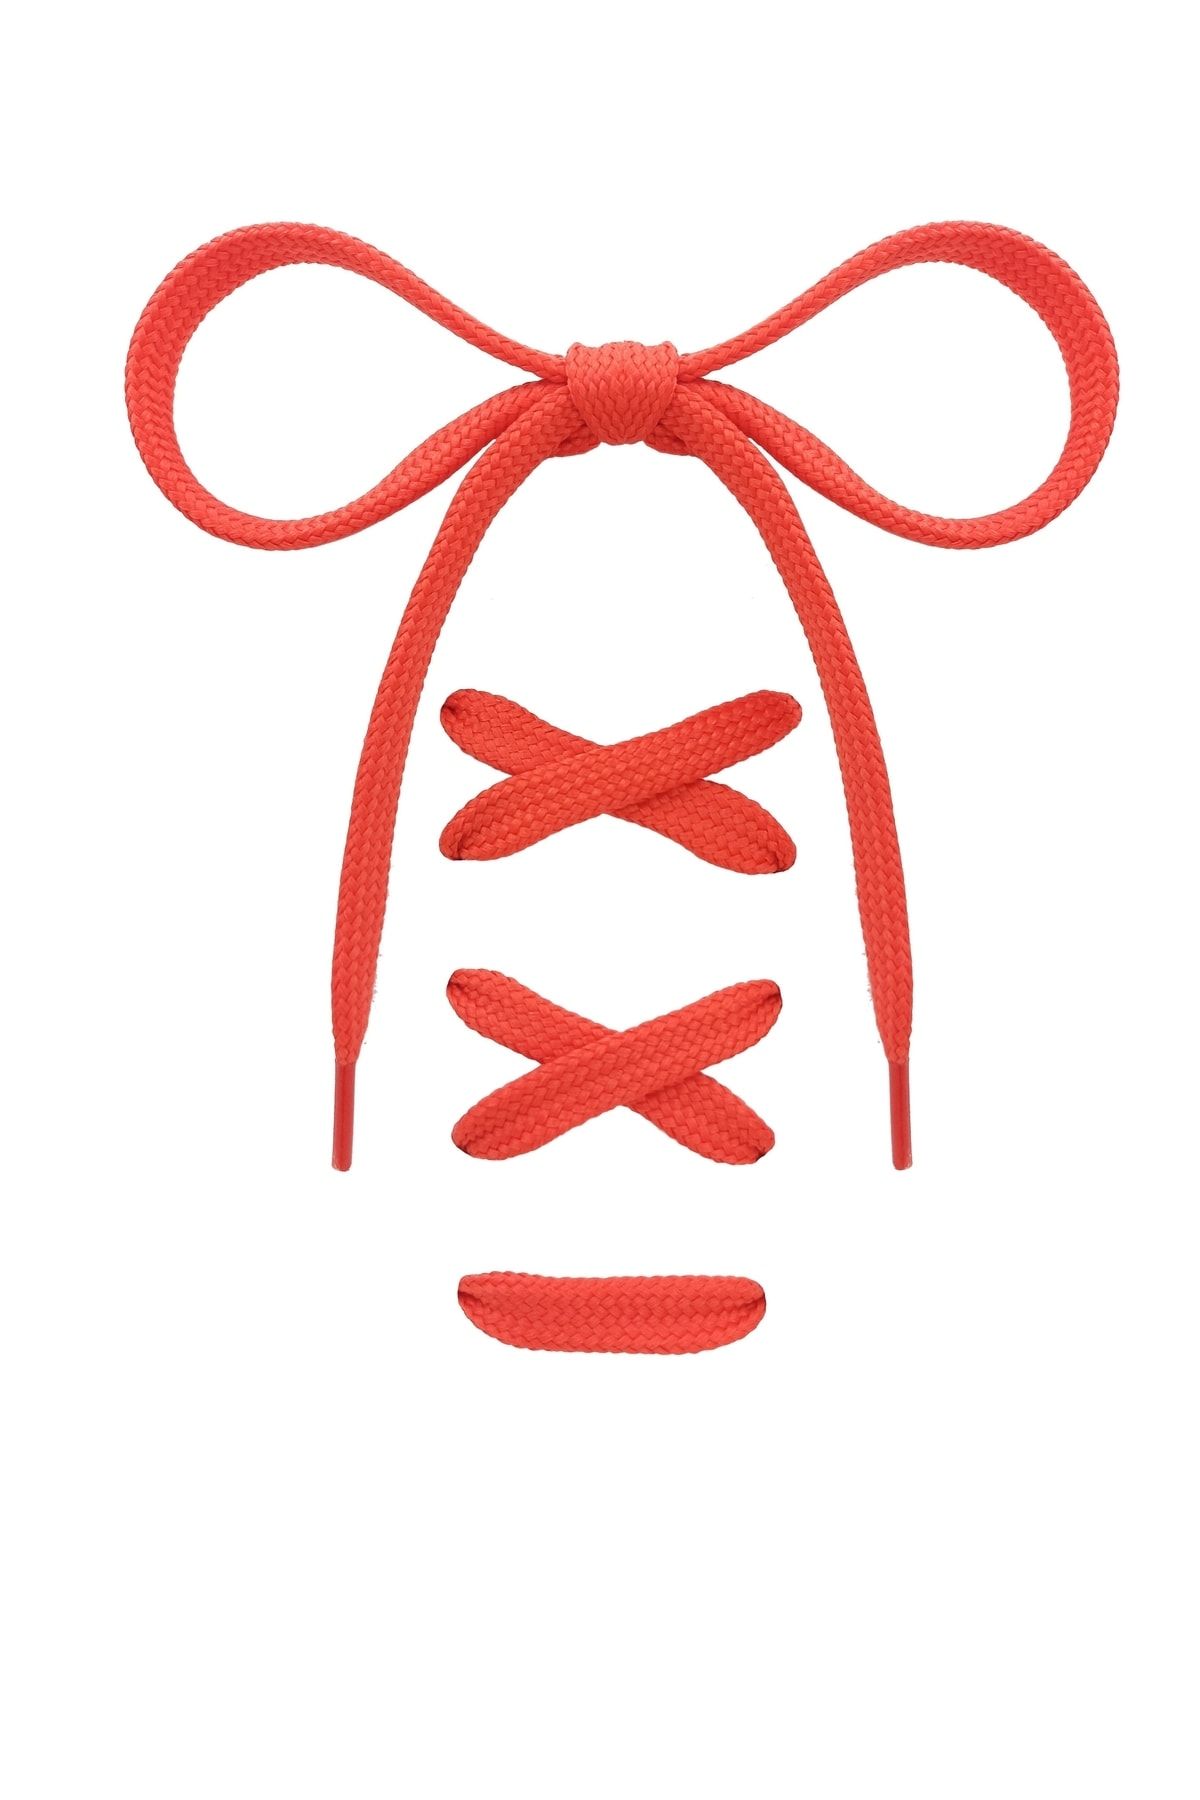 Busky Turuncu (KOYU) Renk Kalın Dokuma Ayakkabı Bağcığı, Bağcık - 120 Cm (1 ÇİFT)